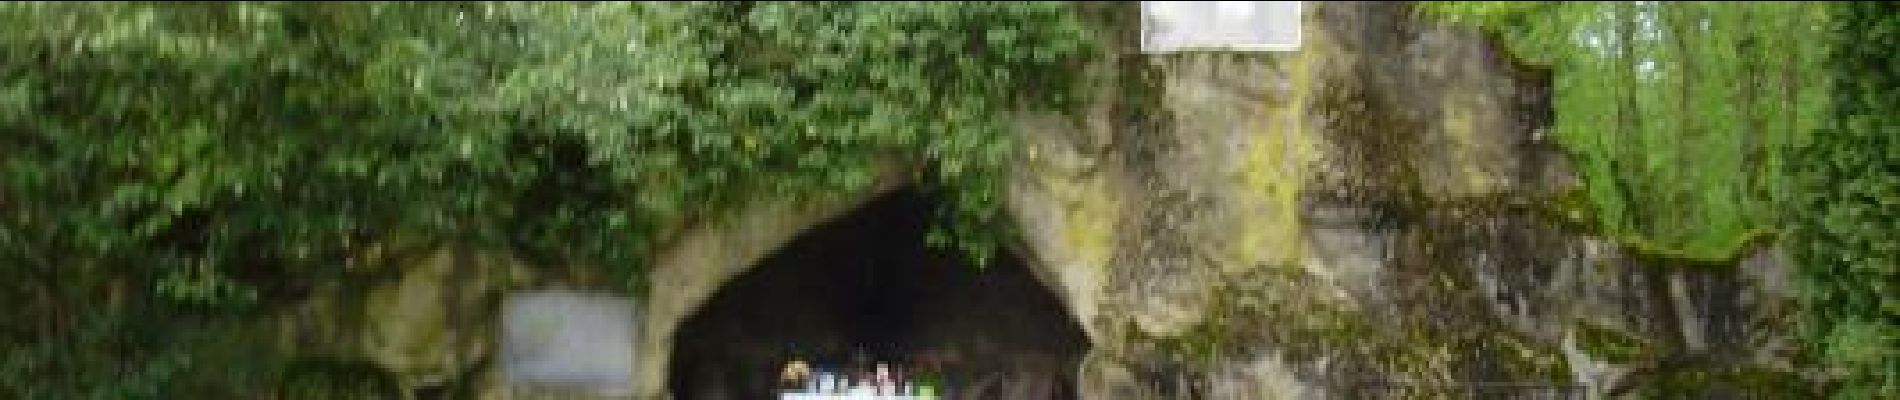 Point d'intérêt Amillis - Grotte Notre Dame - Photo